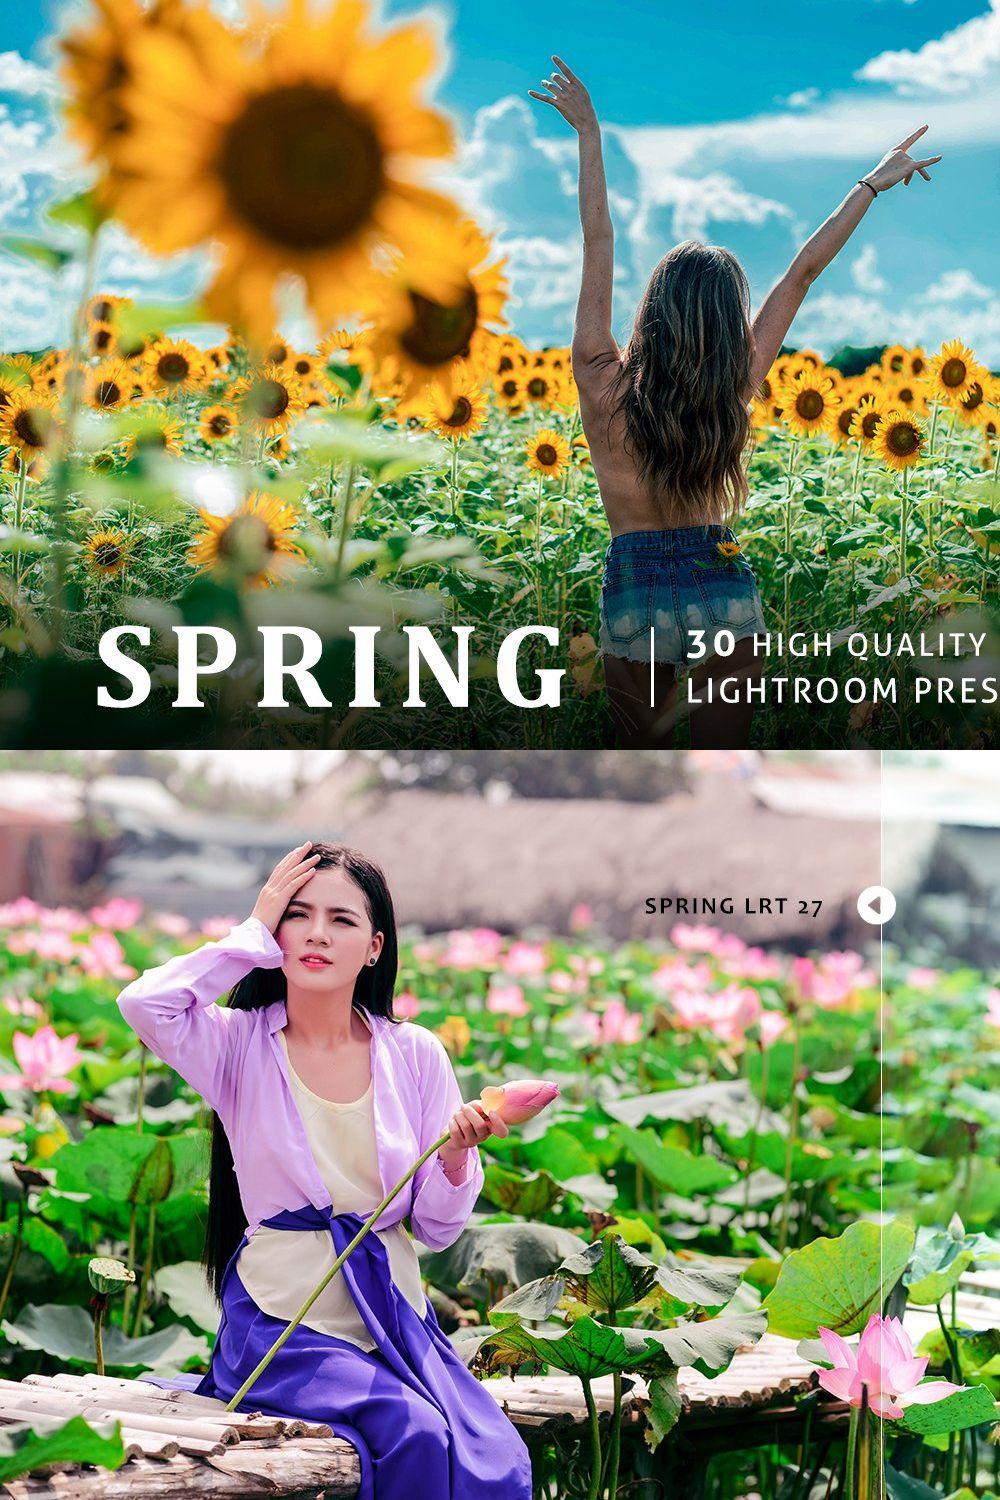 Spring Lightroom Presets pinterest preview image.